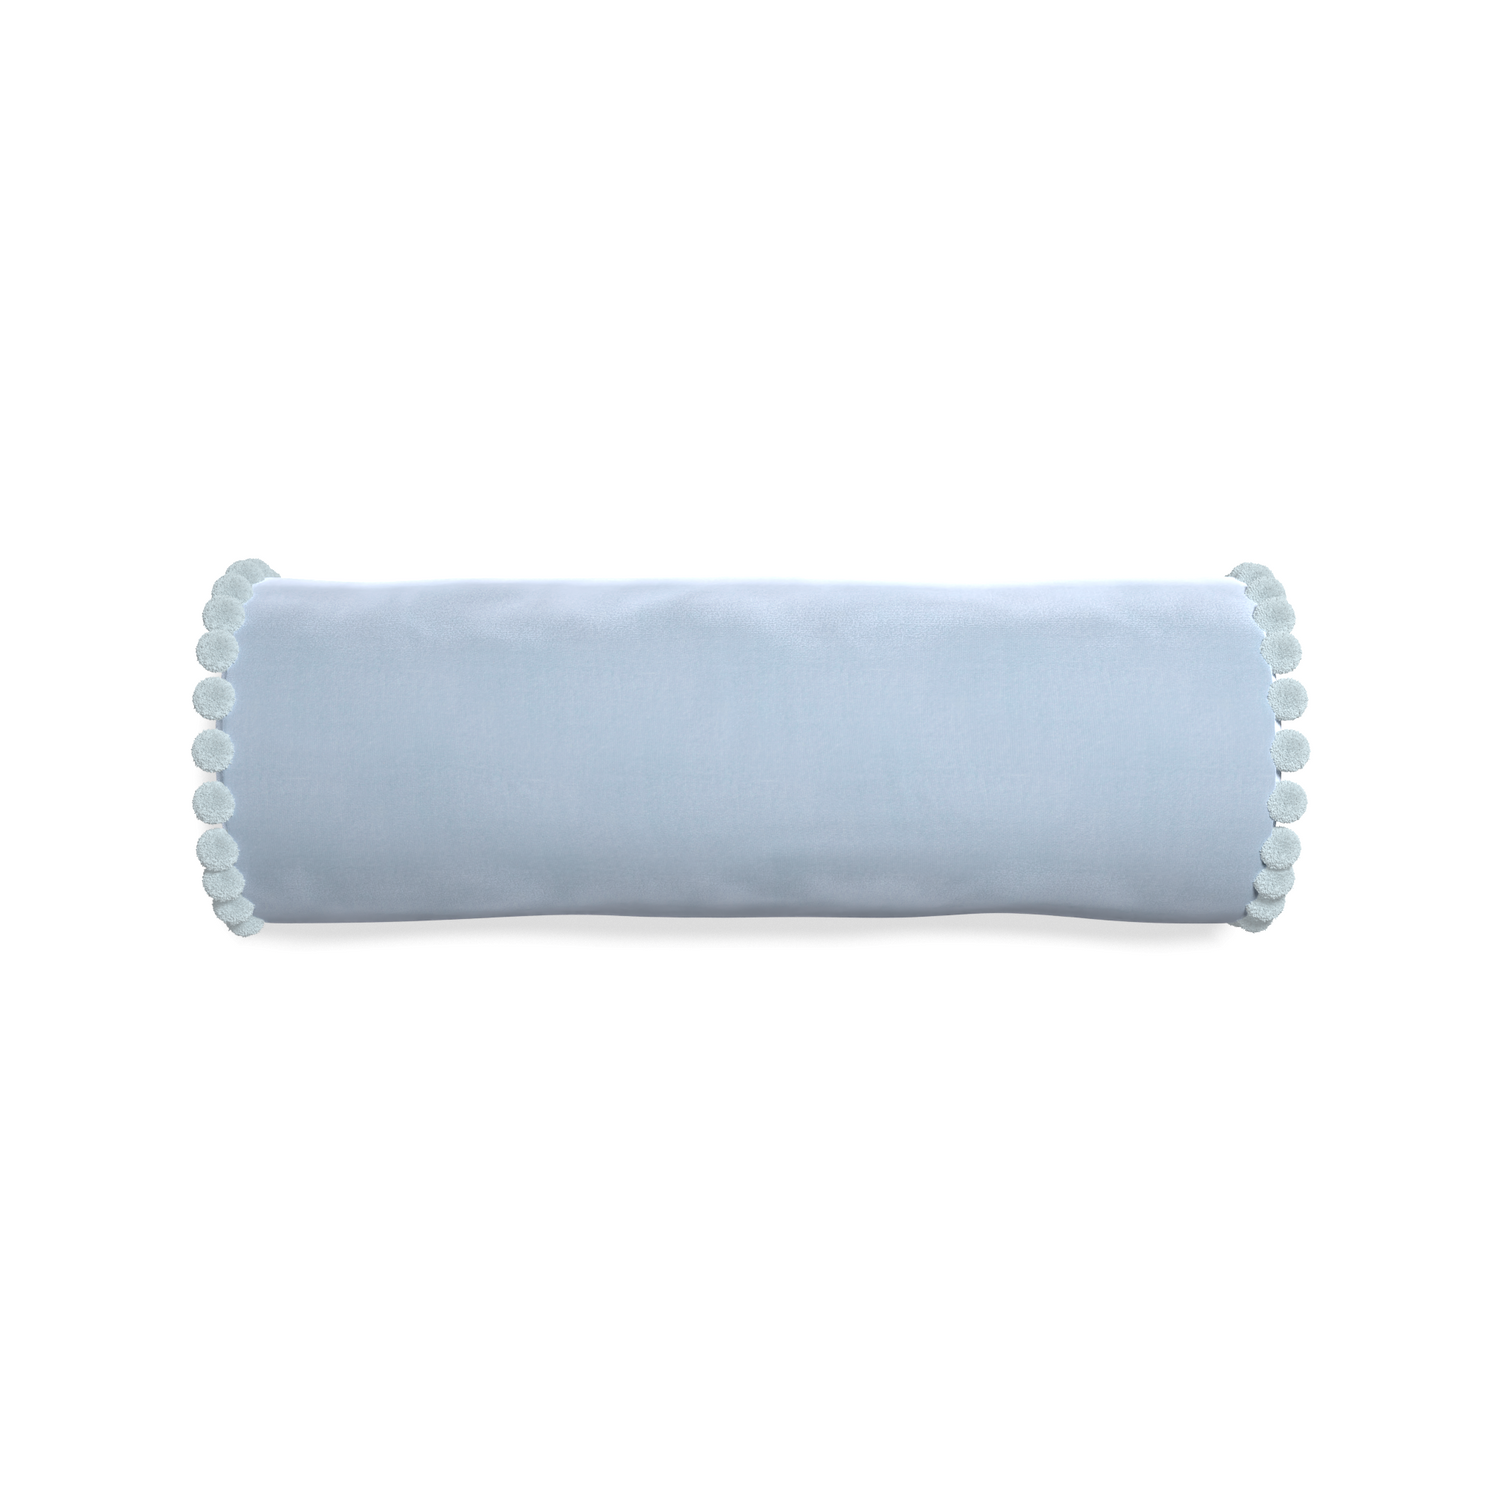 bolster light blue velvet pillow with light blue pom pom